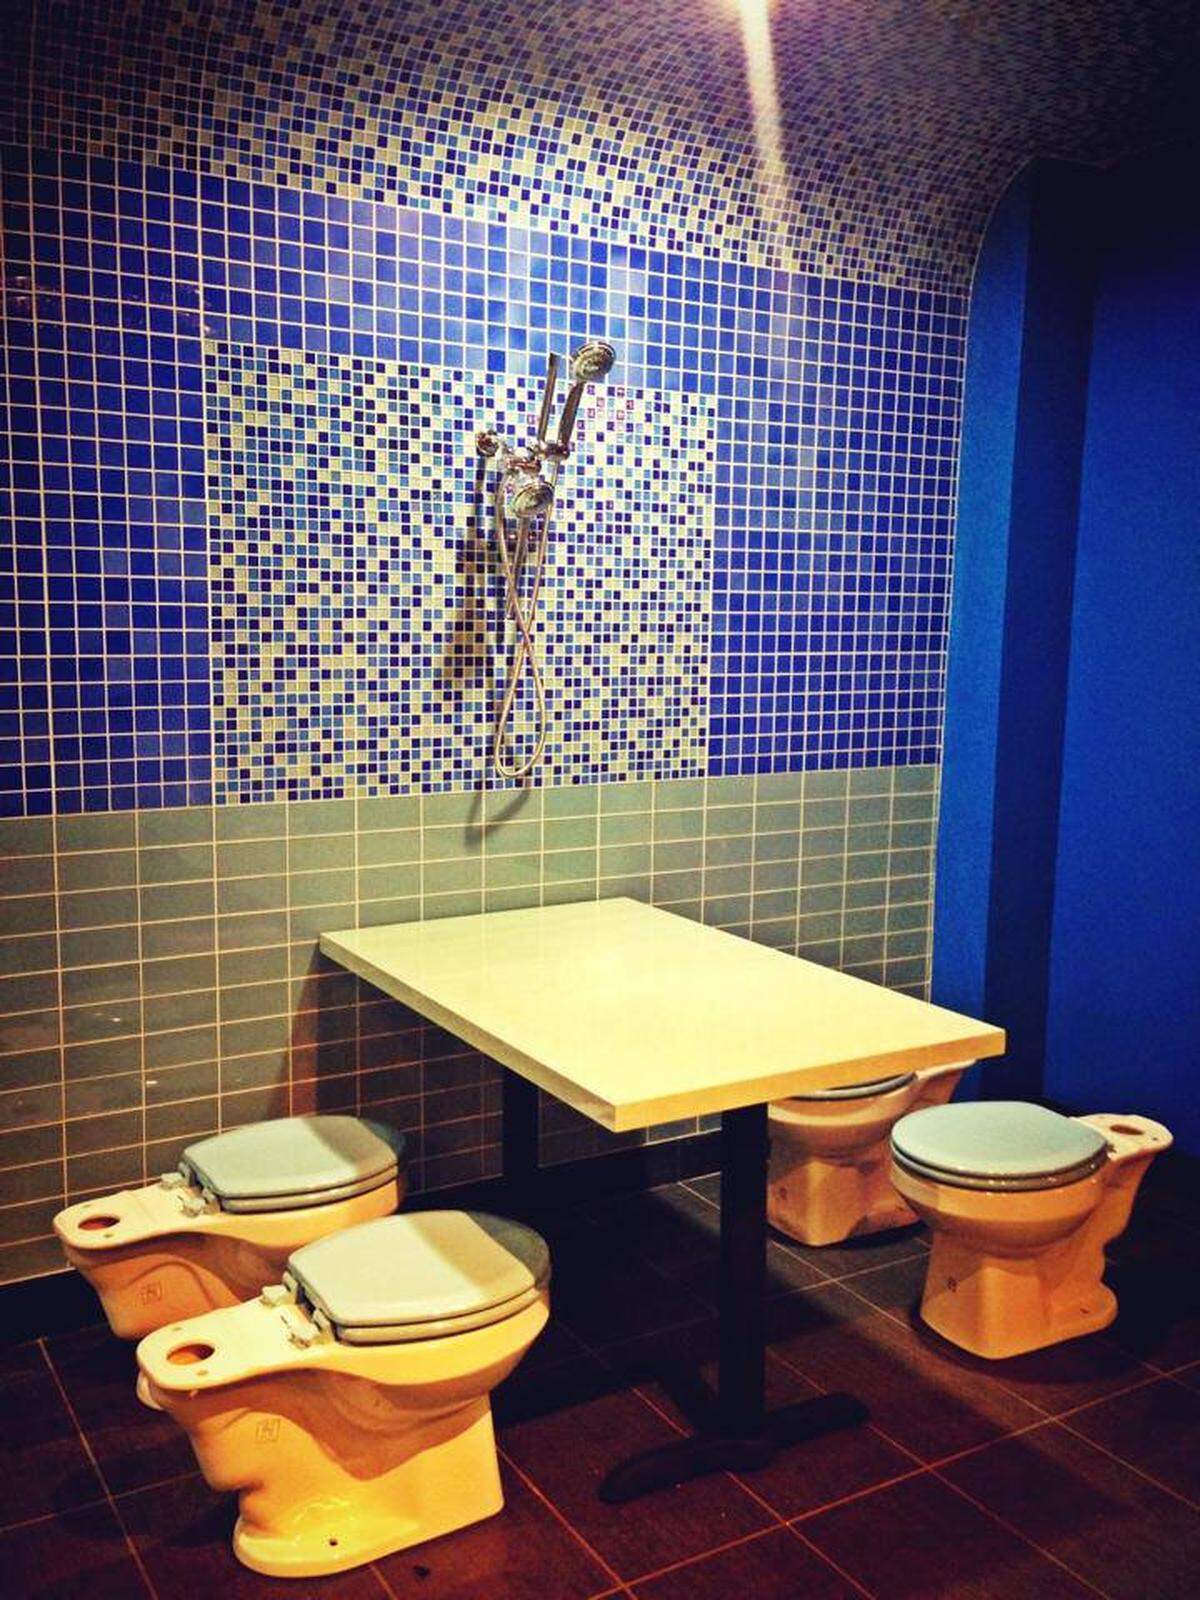 Toilettensitze dienen als Sessel, Urinale an der Wand als Dekoration und auch die Speisekarte mit Gerichten wie Verstopfung (Nudel mit Soja-Paste) runden das etwas andere Erlebnis ab.